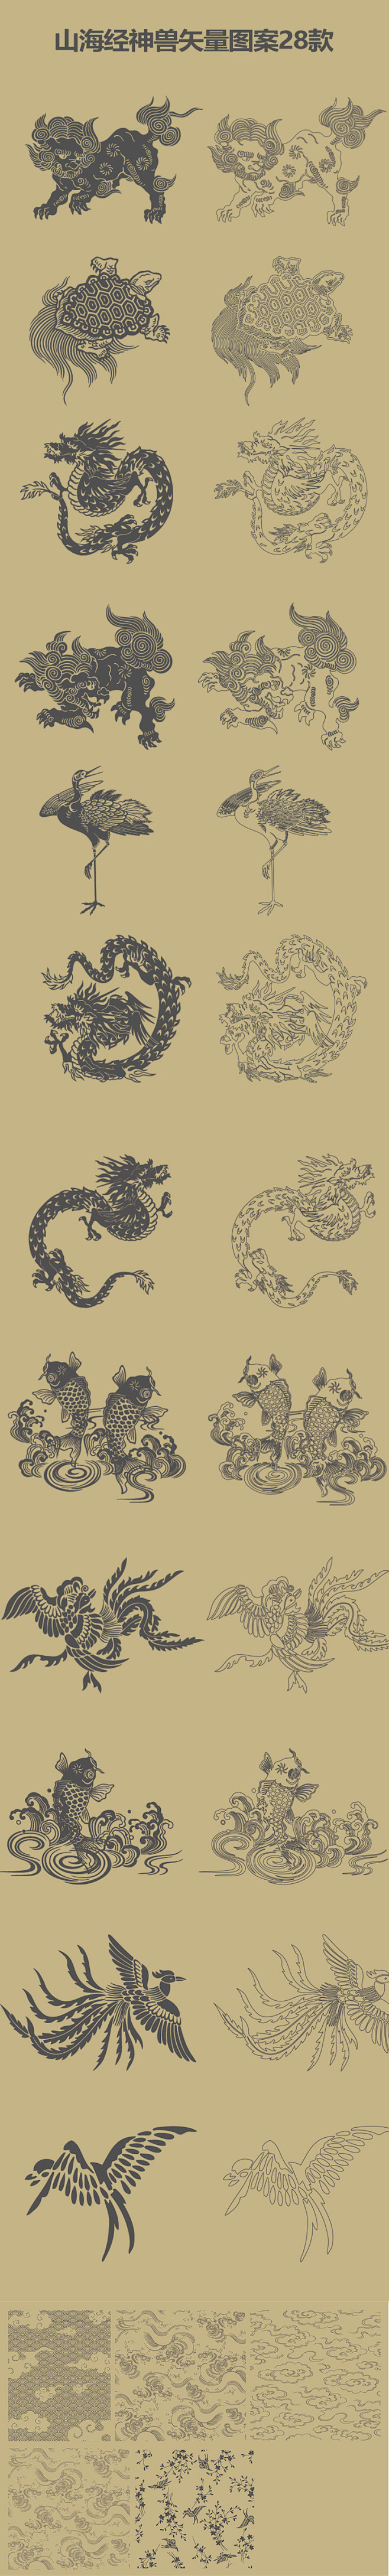 中国风山海经神兽复古图腾纹理矢量图案包装印刷手机壳设计素材图